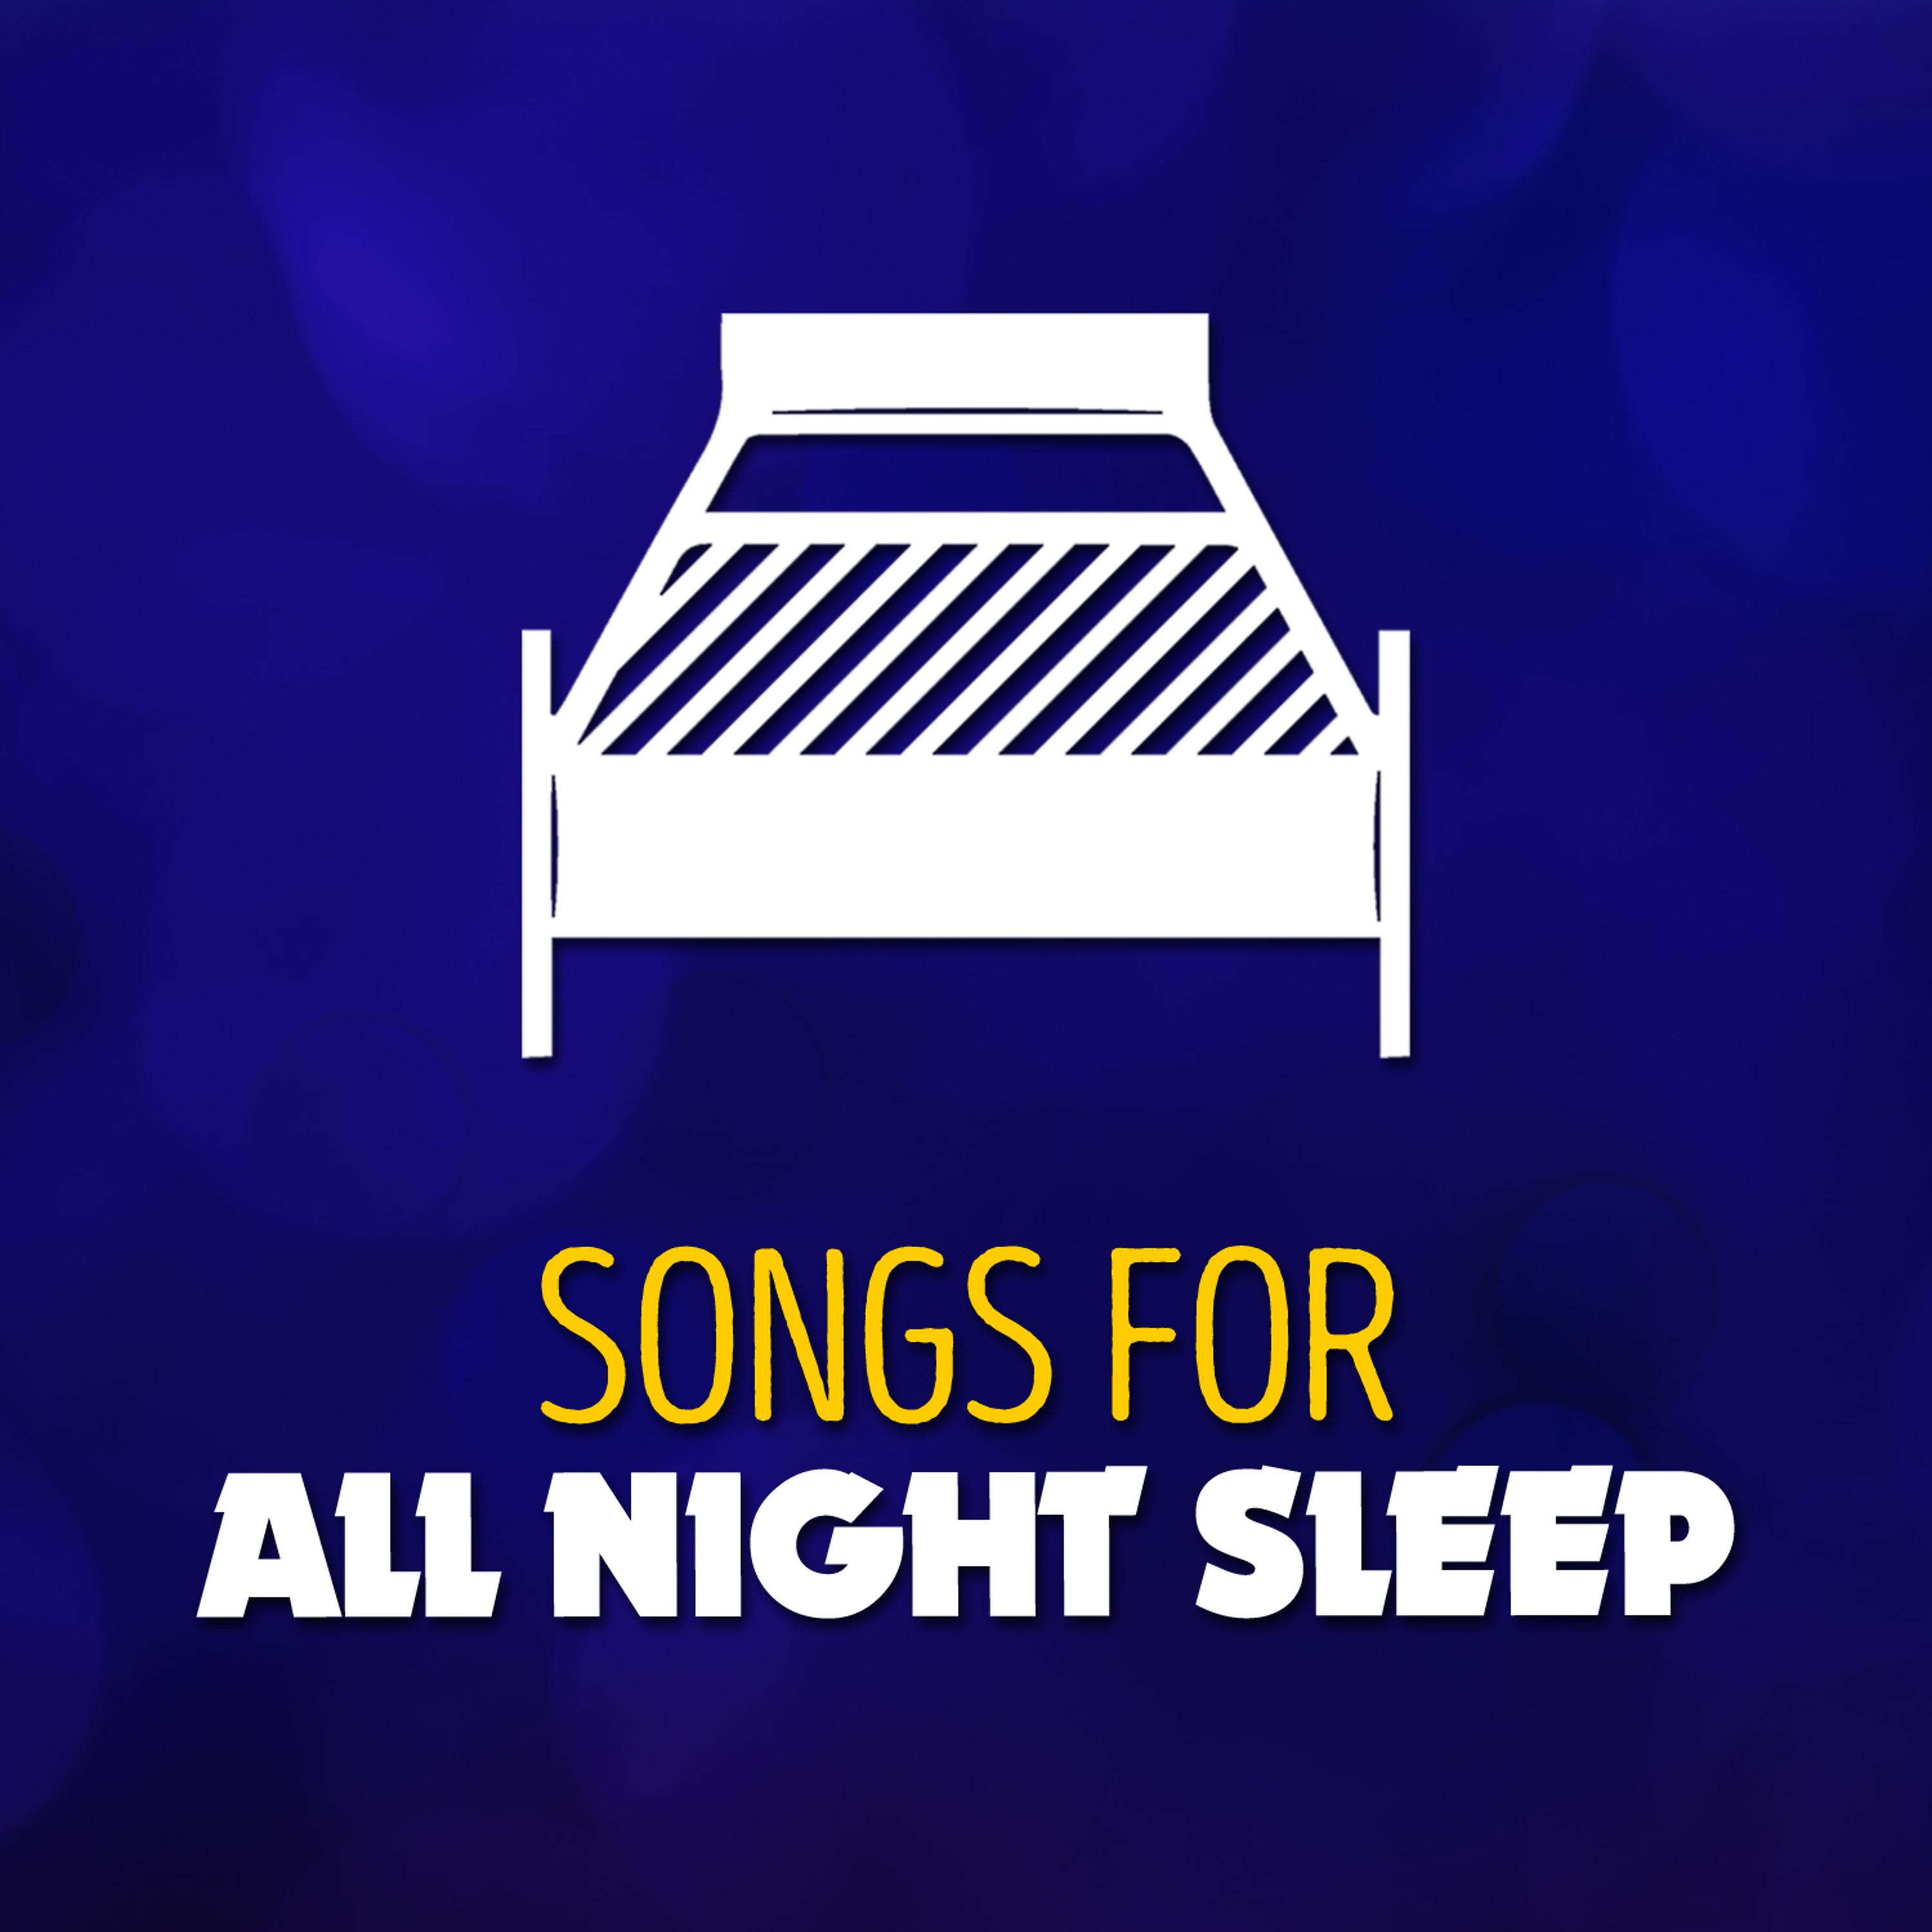 Песня sleep well speed up. G Night Sleep песня.